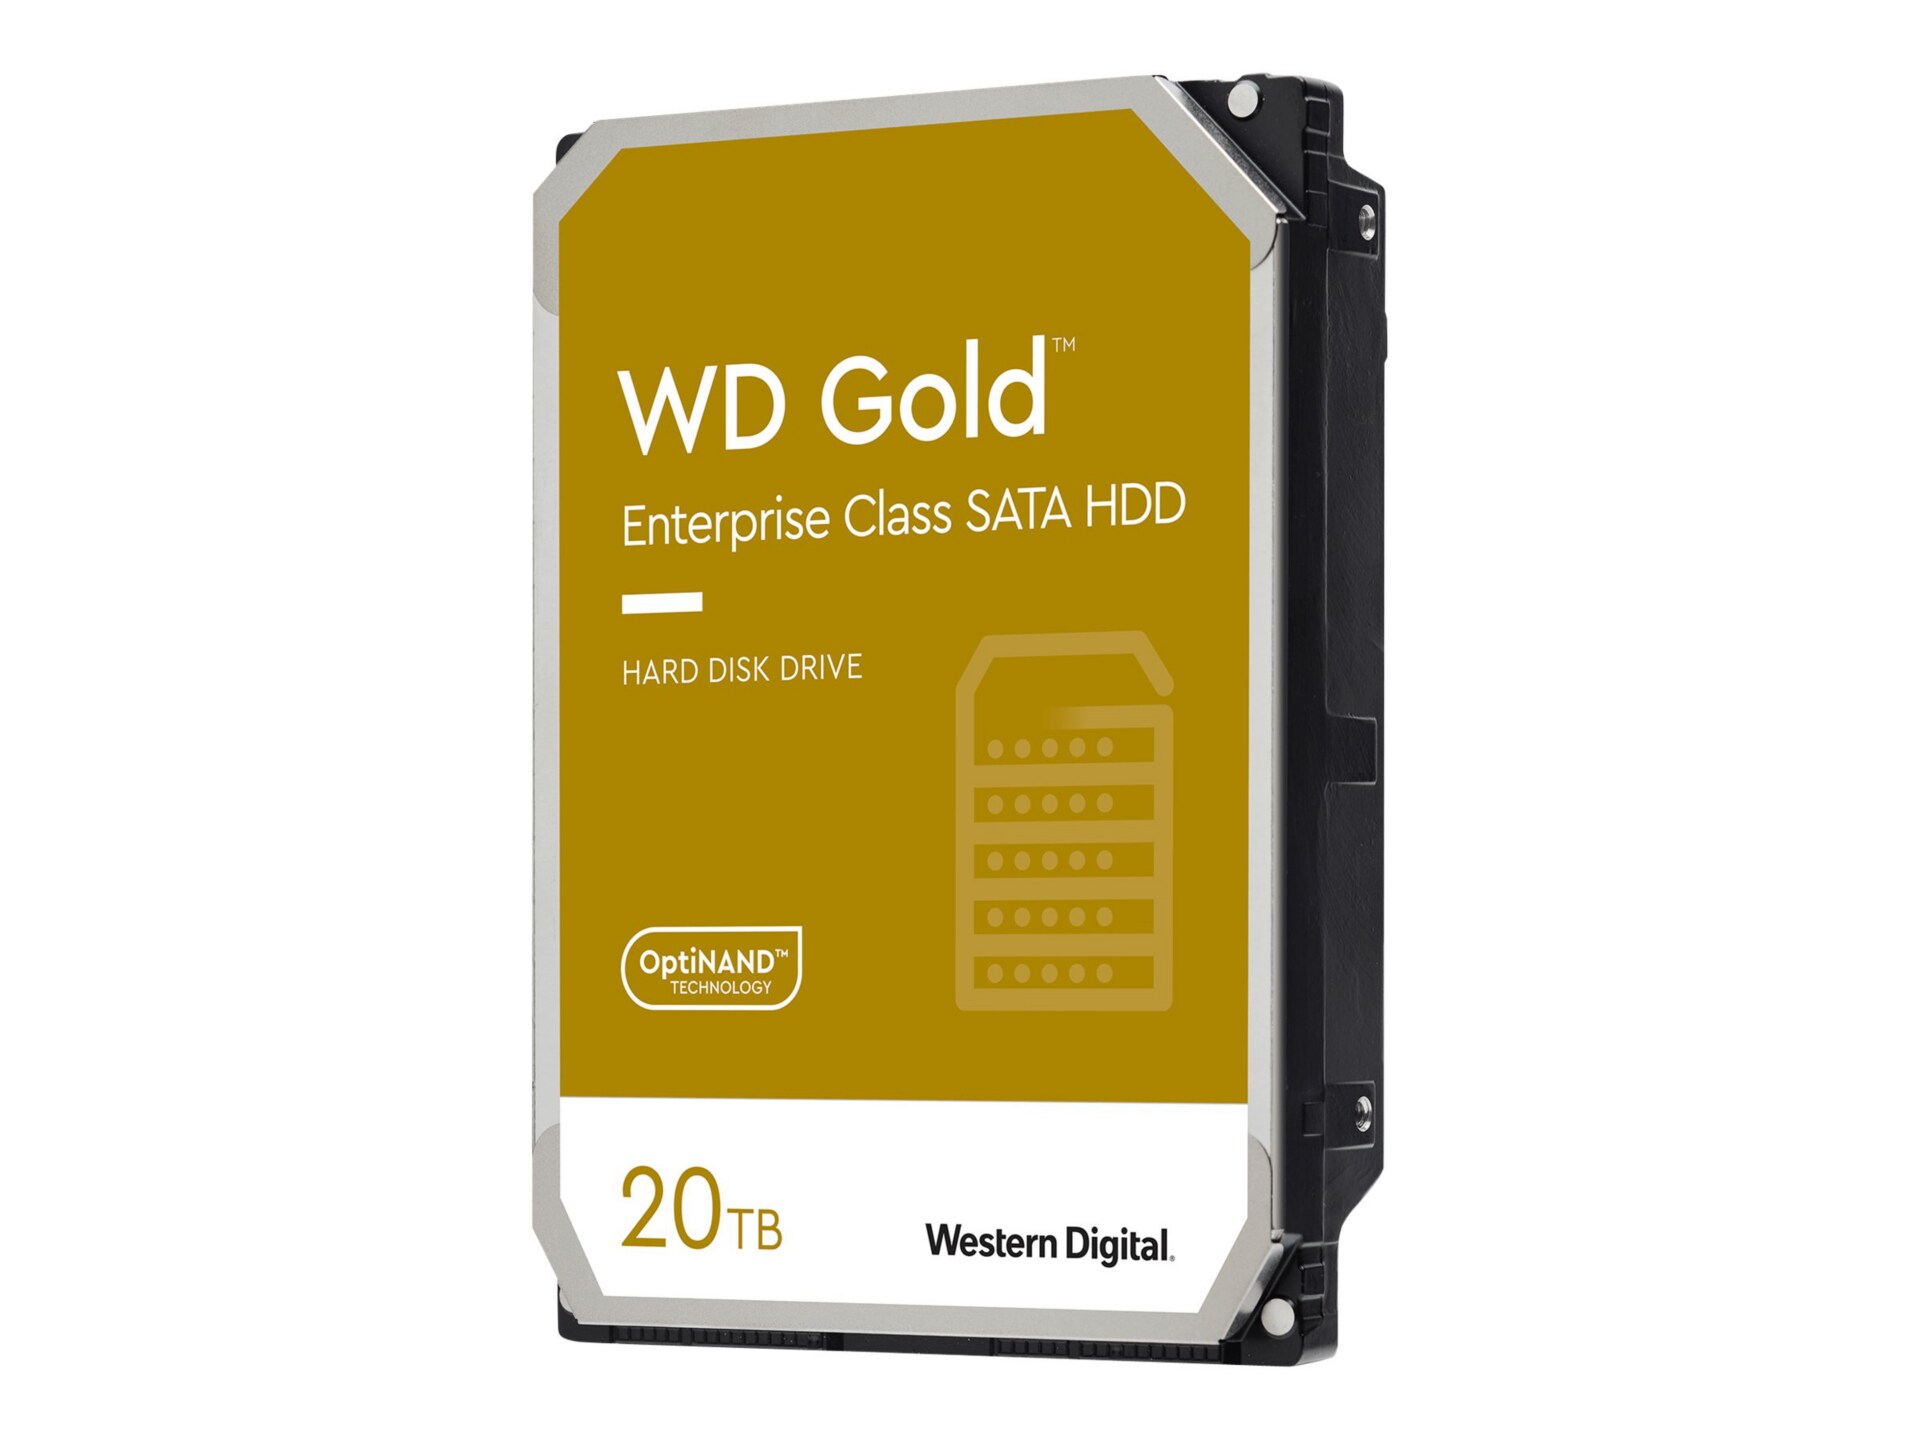 WD Gold WD201KRYZ - hard drive - TB - SATA 6Gb/s - WD201KRYZ - Internal Hard Drives - CDW.com